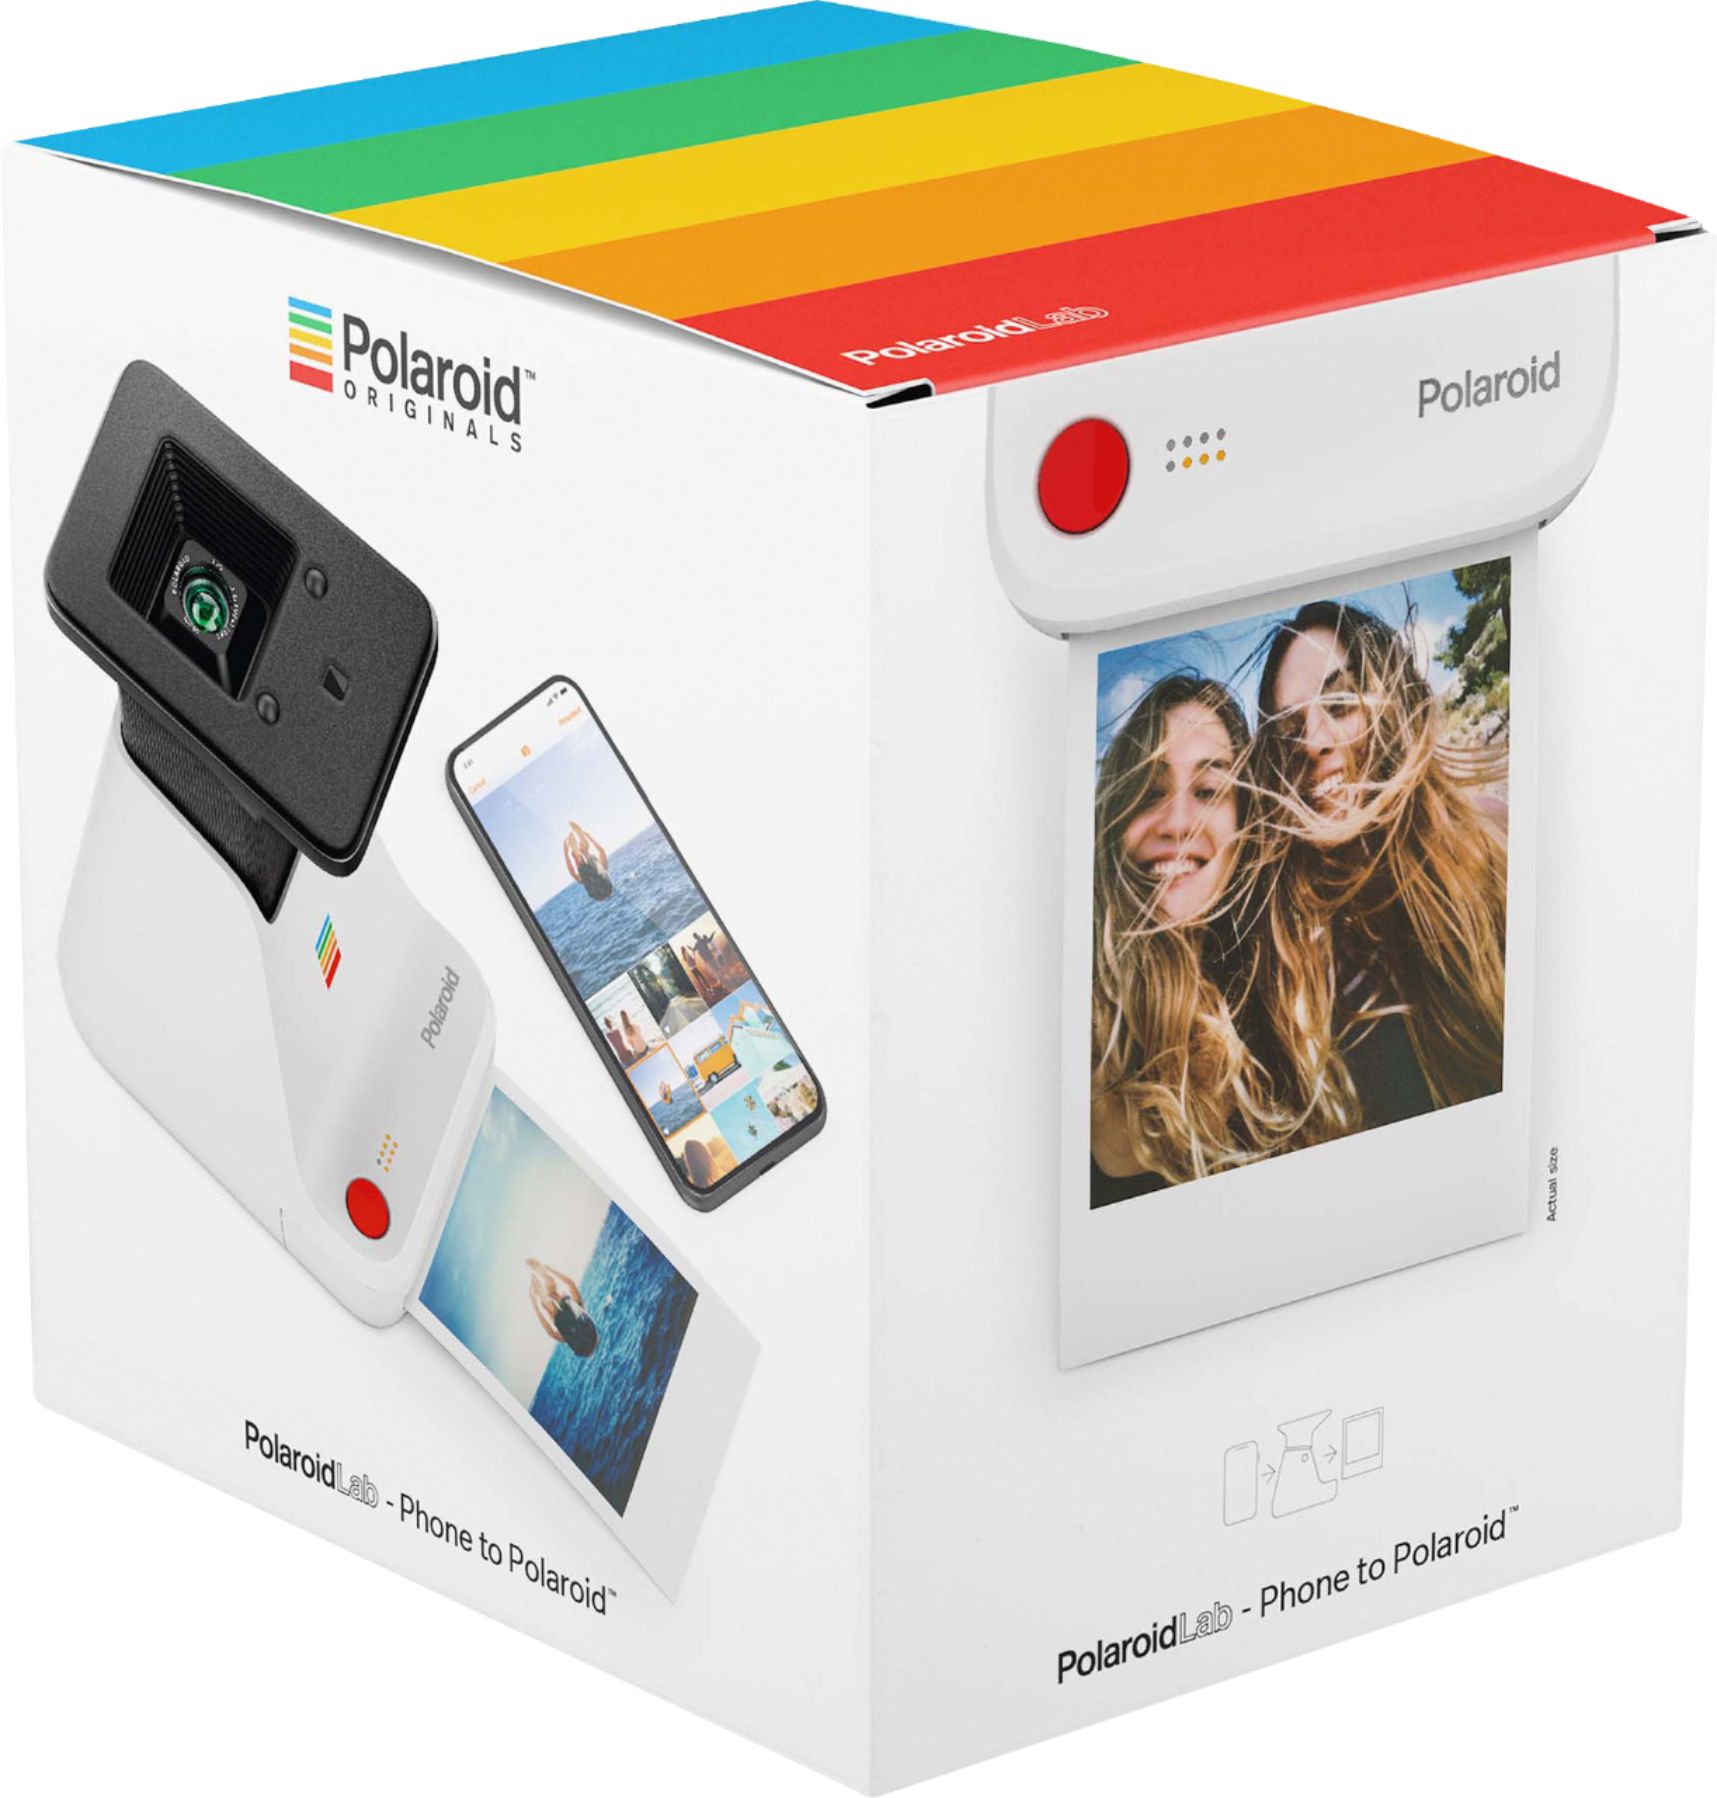 The 10 Best Polaroid Printers of 2021 - Polaroid Printer Reviews